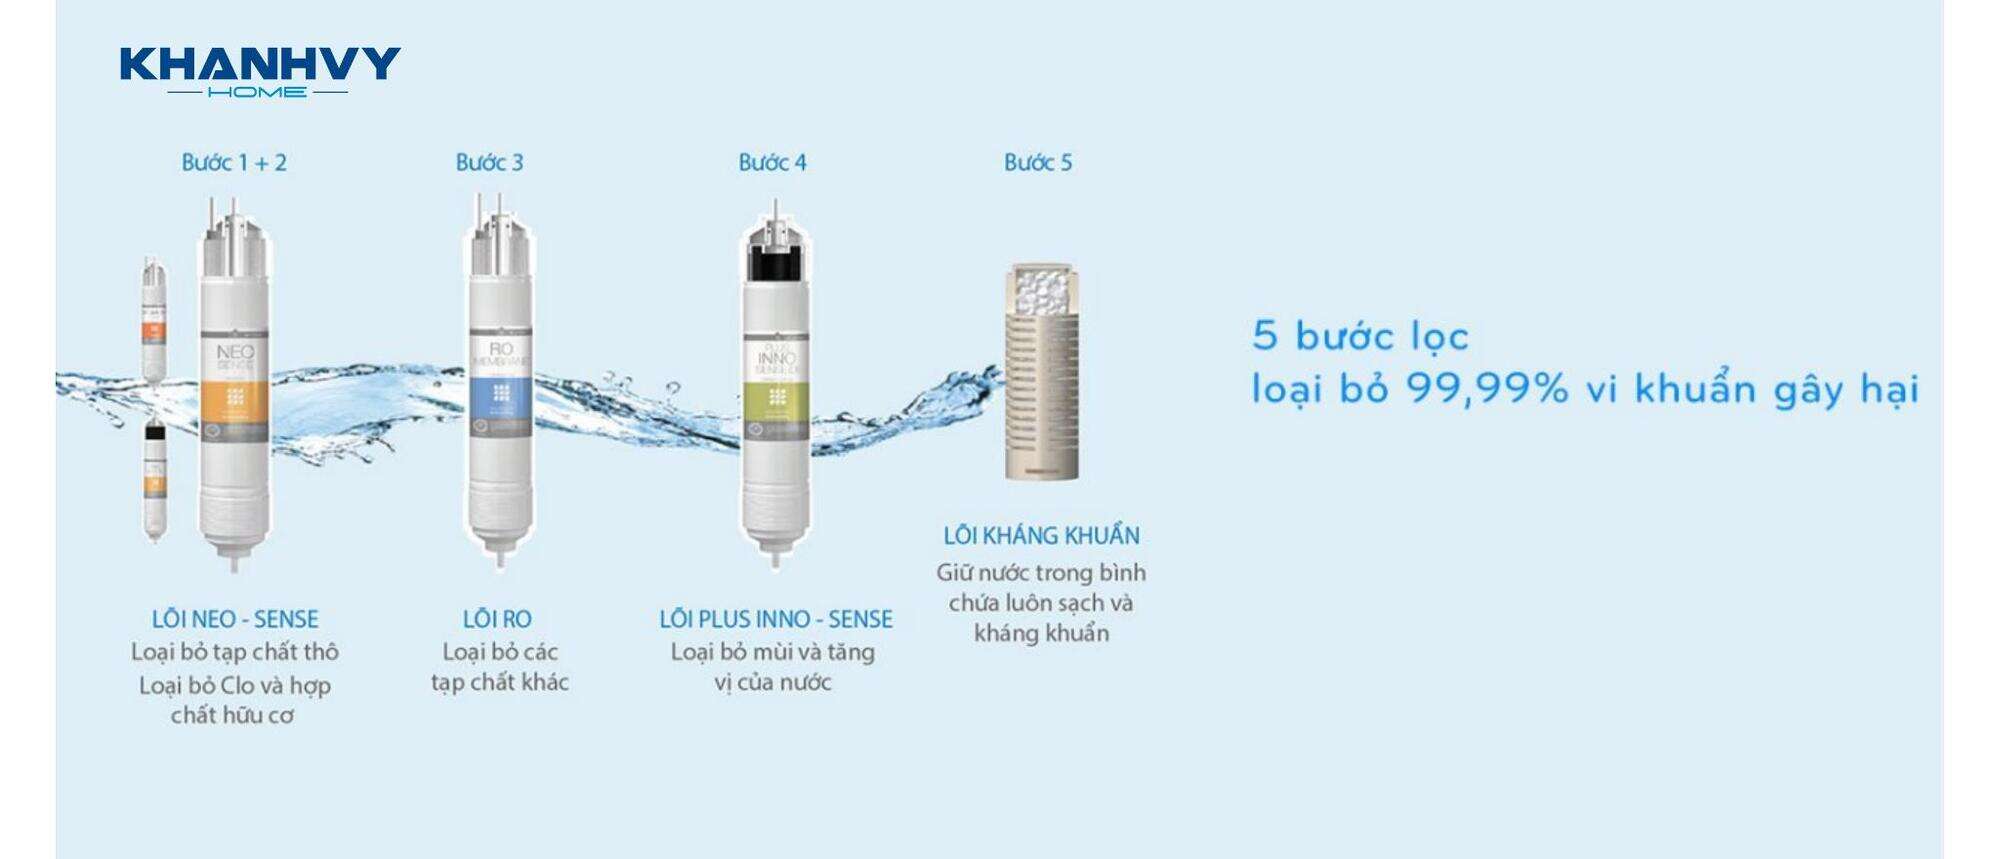 Máy lọc nước hoạt động hiệu quả với 5 bước lọc thông minh tích hợp trong 4 lõi lọc Hàn Quốc chất lượng cao